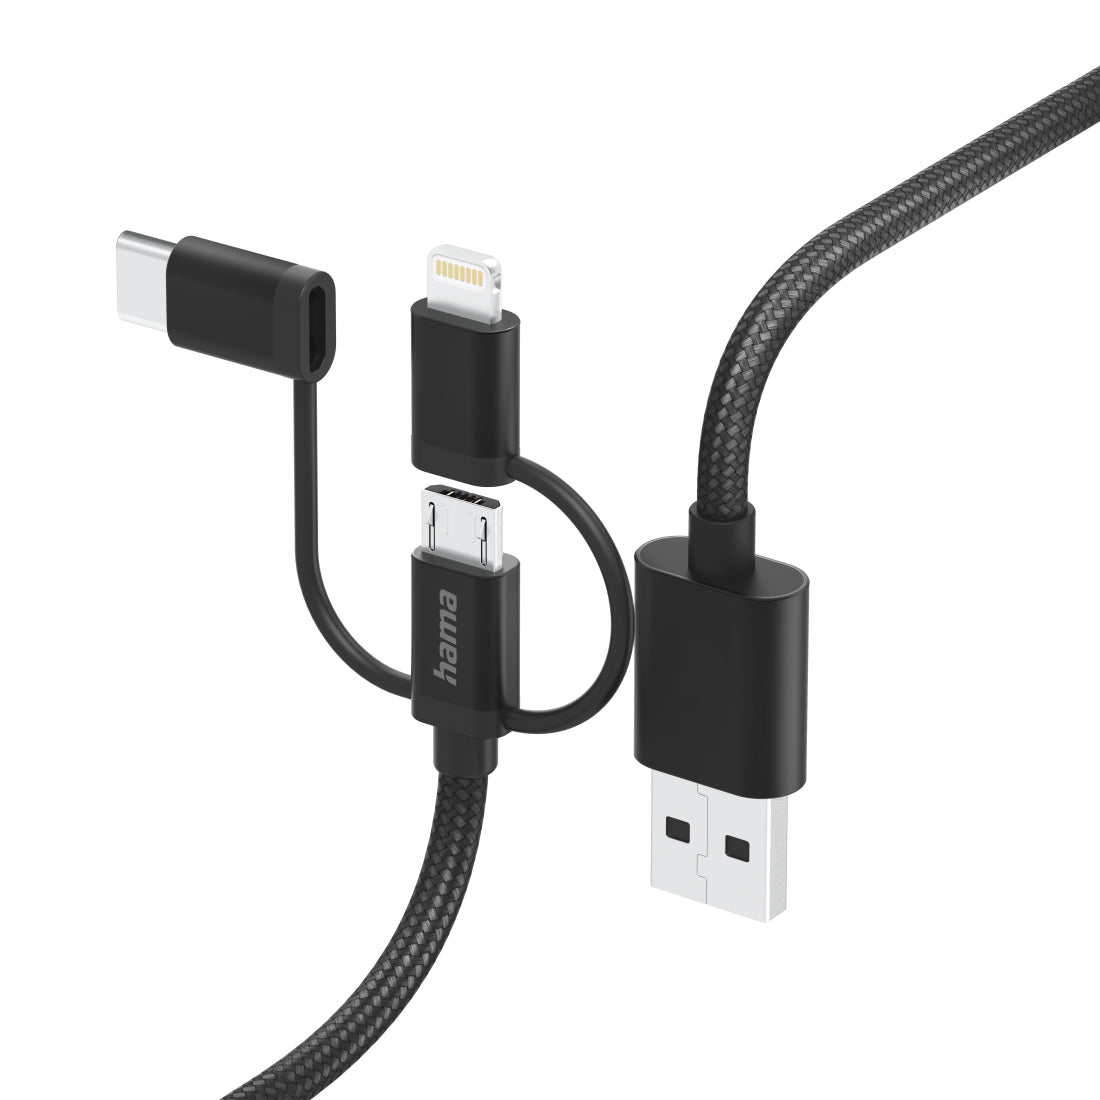 Cabo HAMA 3in1 micri USB +USB-C +LTG, 1.5m,preto